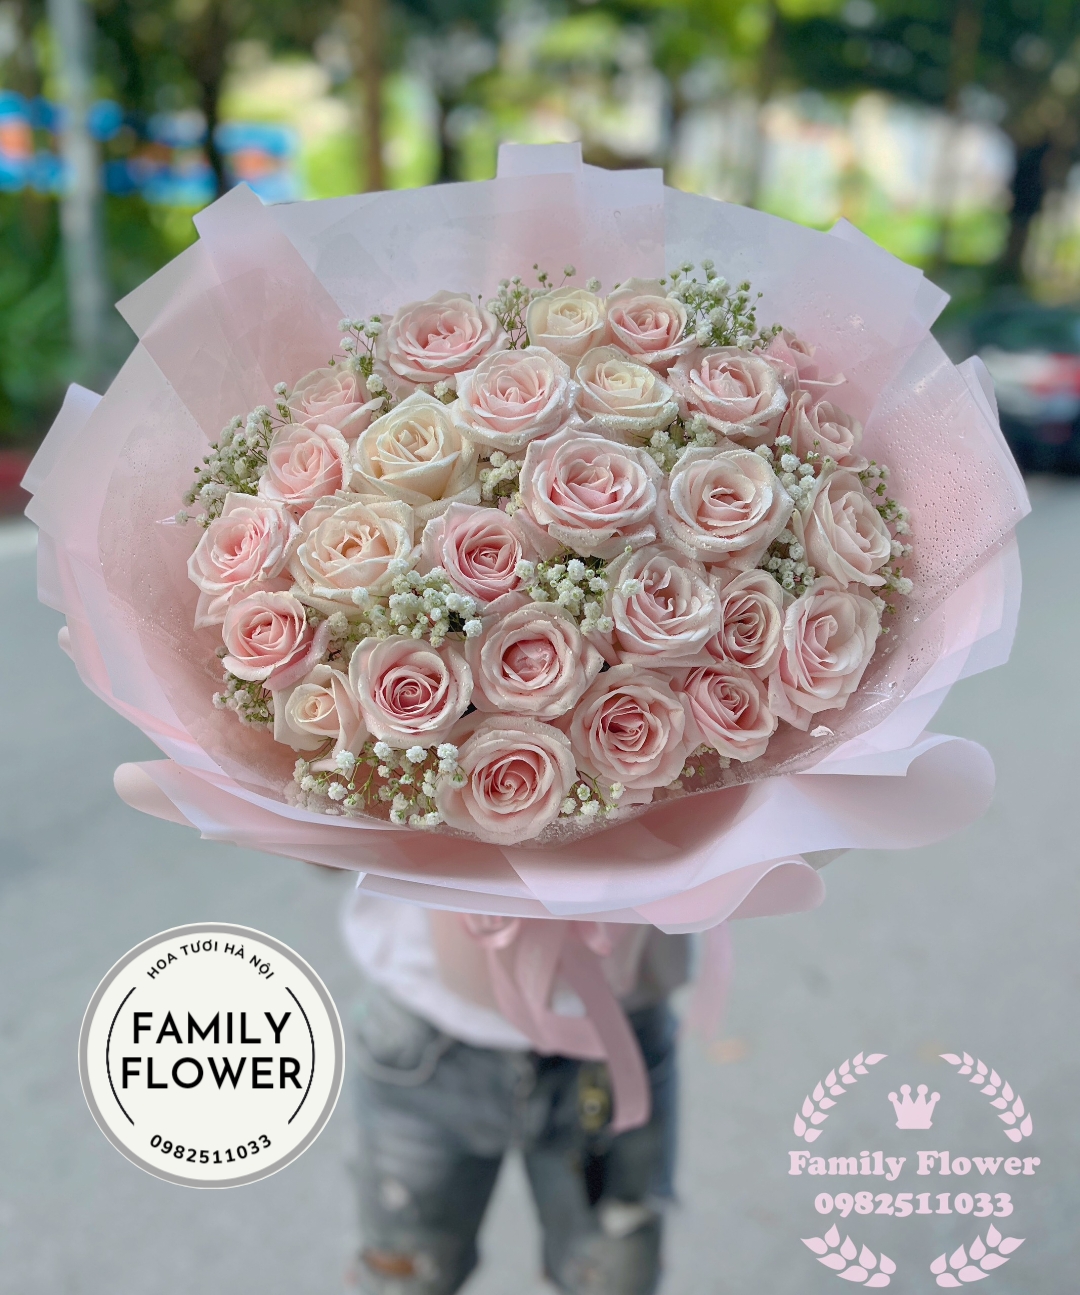 Bó hoa tặng vợ người yêu nhân dịp 20 tháng 10 ở Hà Nội ! Hoa 20 tháng 10, hoa tươi Hà Nội     